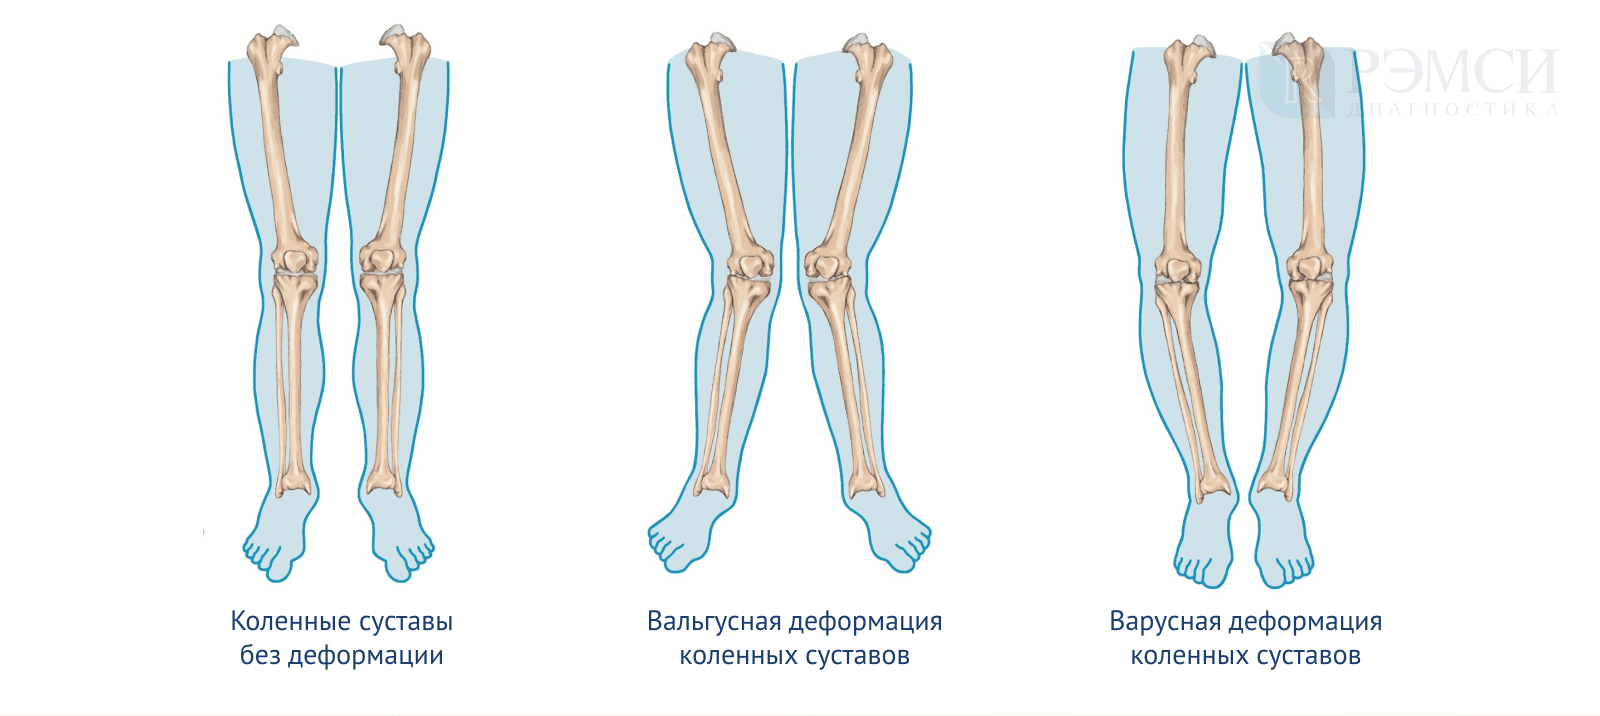 Варусная деформация оси нижних конечностей. Варусная деформация коленных суставов рентген. Сгибательная и вальгусная деформация коленных суставов. Варусная и вальгусная деформация коленного сустава. Почему ногу назвали ногой